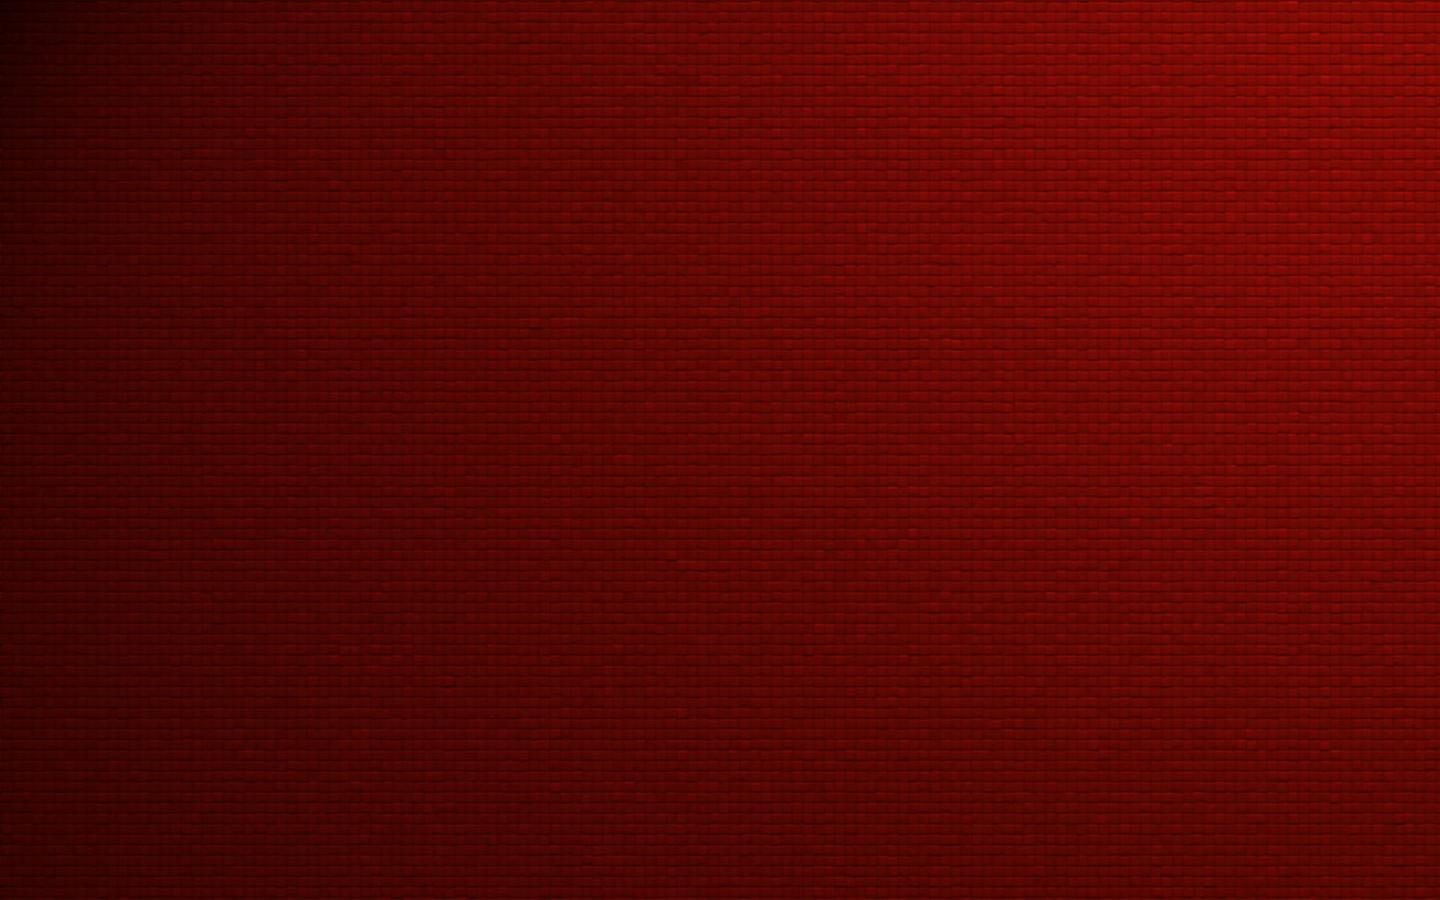 Red Desktop Wallpaper An Abstract Made